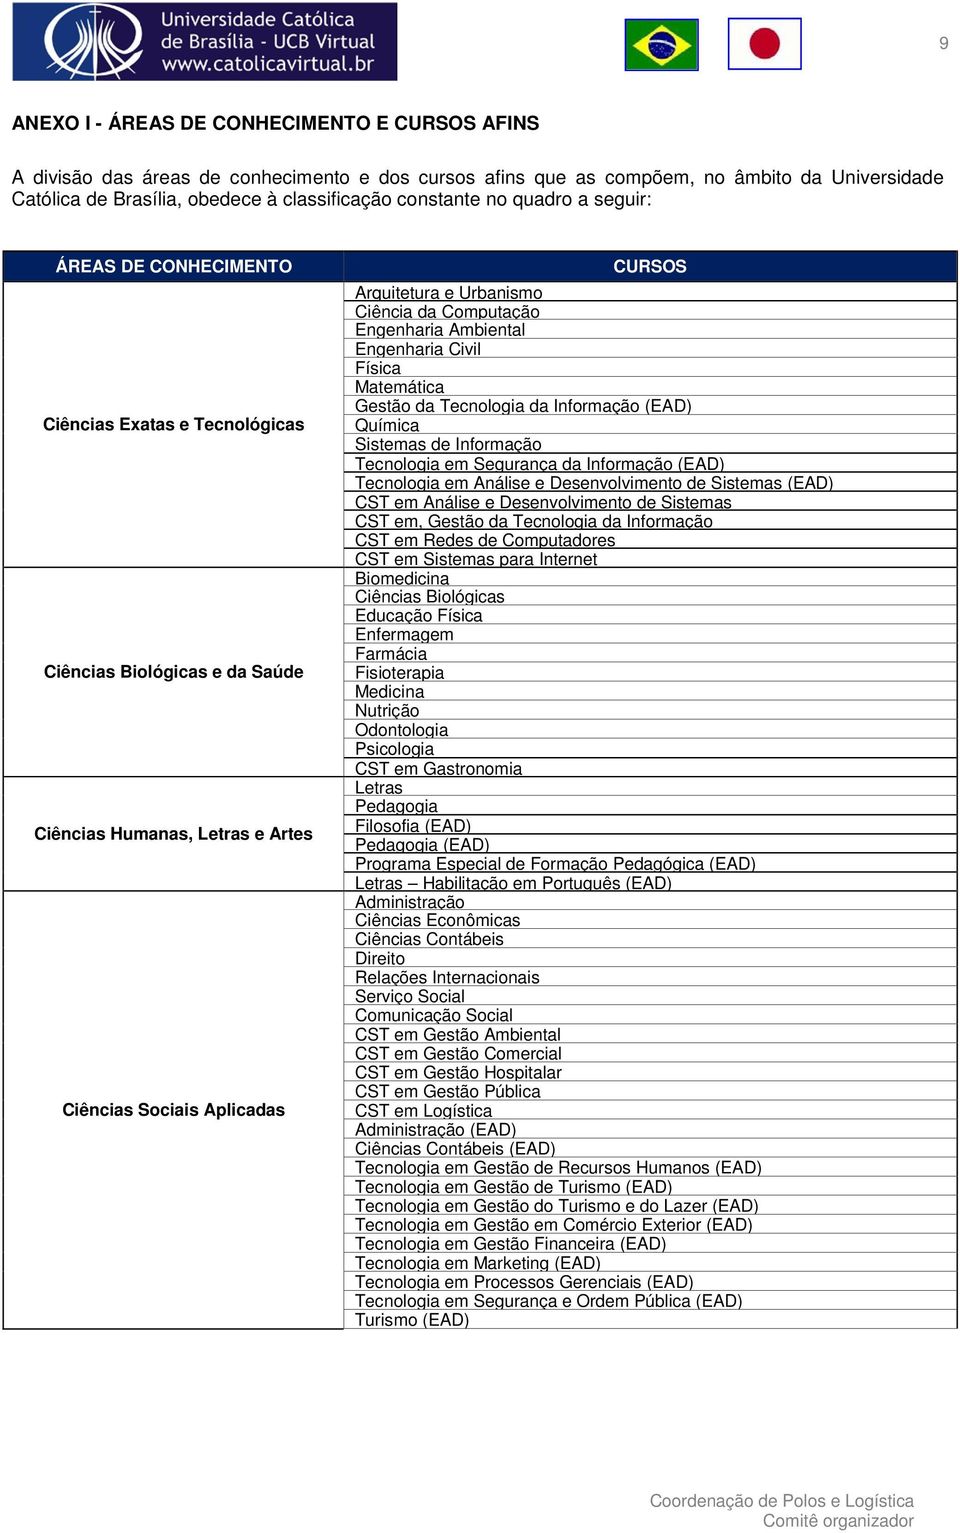 Urbanismo Ciência da Computação Engenharia Ambiental Engenharia Civil Física Matemática Gestão da Tecnologia da Informação (EAD) Química Sistemas de Informação Tecnologia em Segurança da Informação